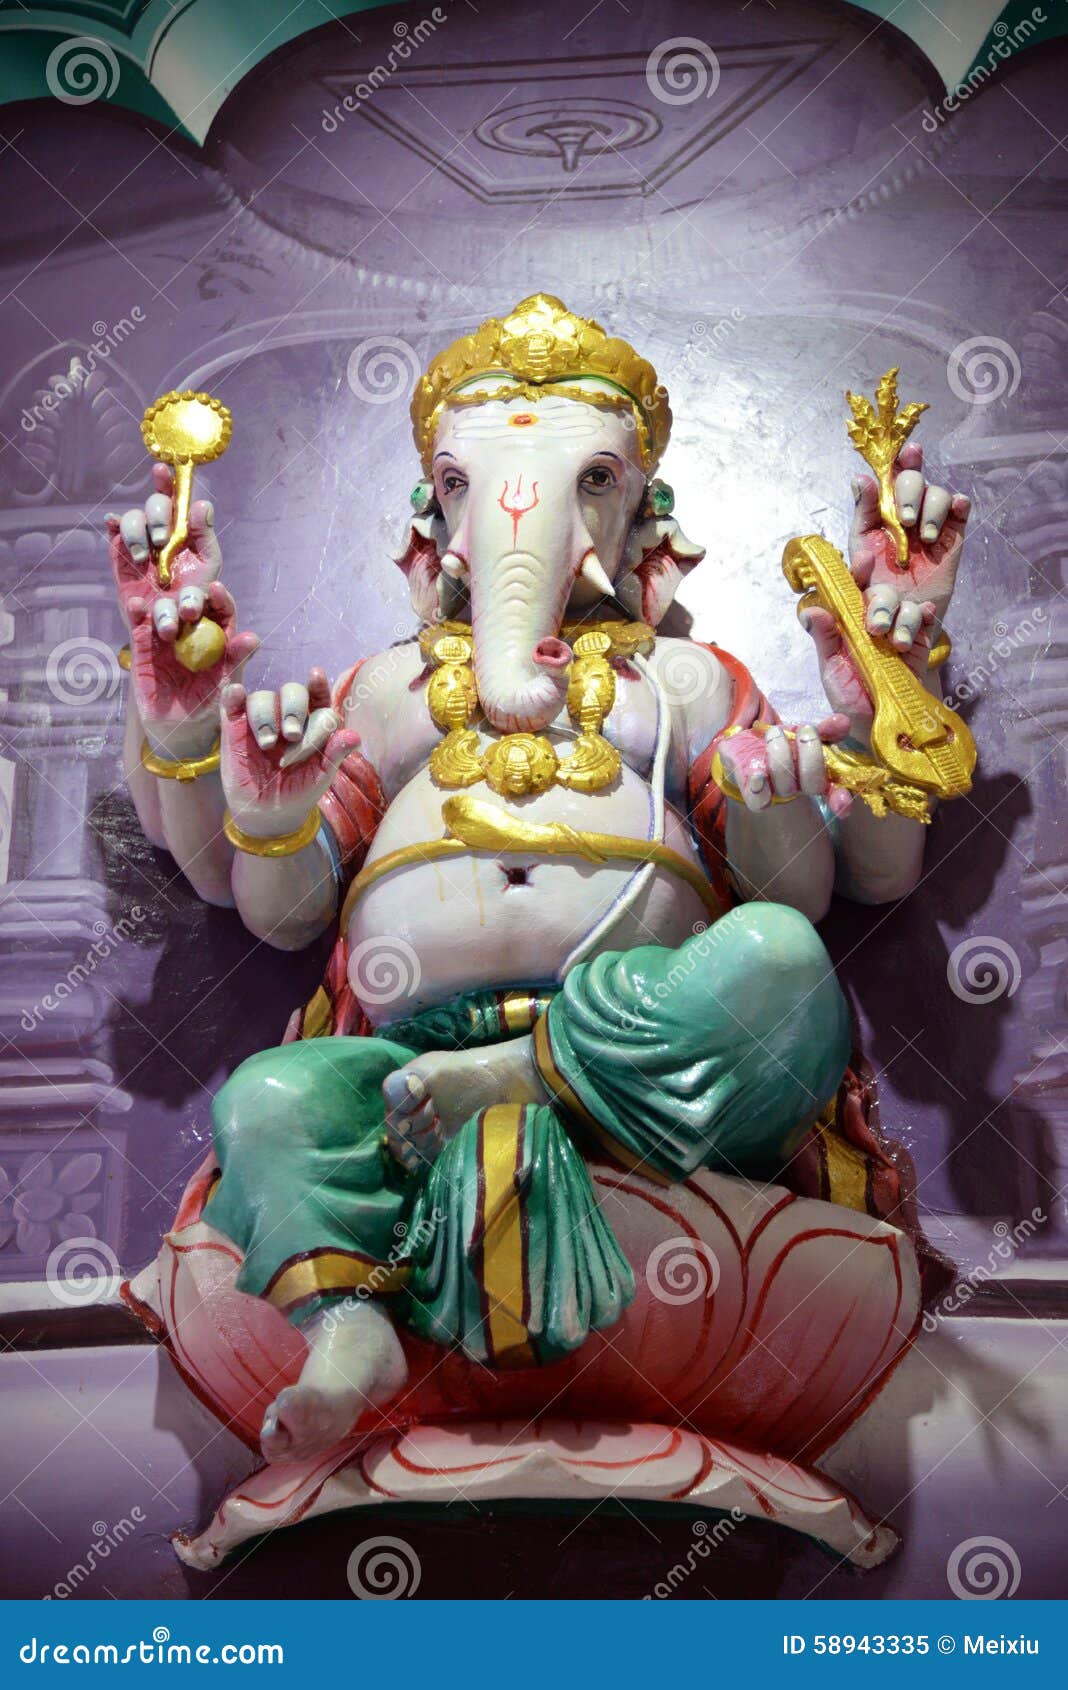 Lord ganesha stock image. Image of elephant, mythology - 58943335